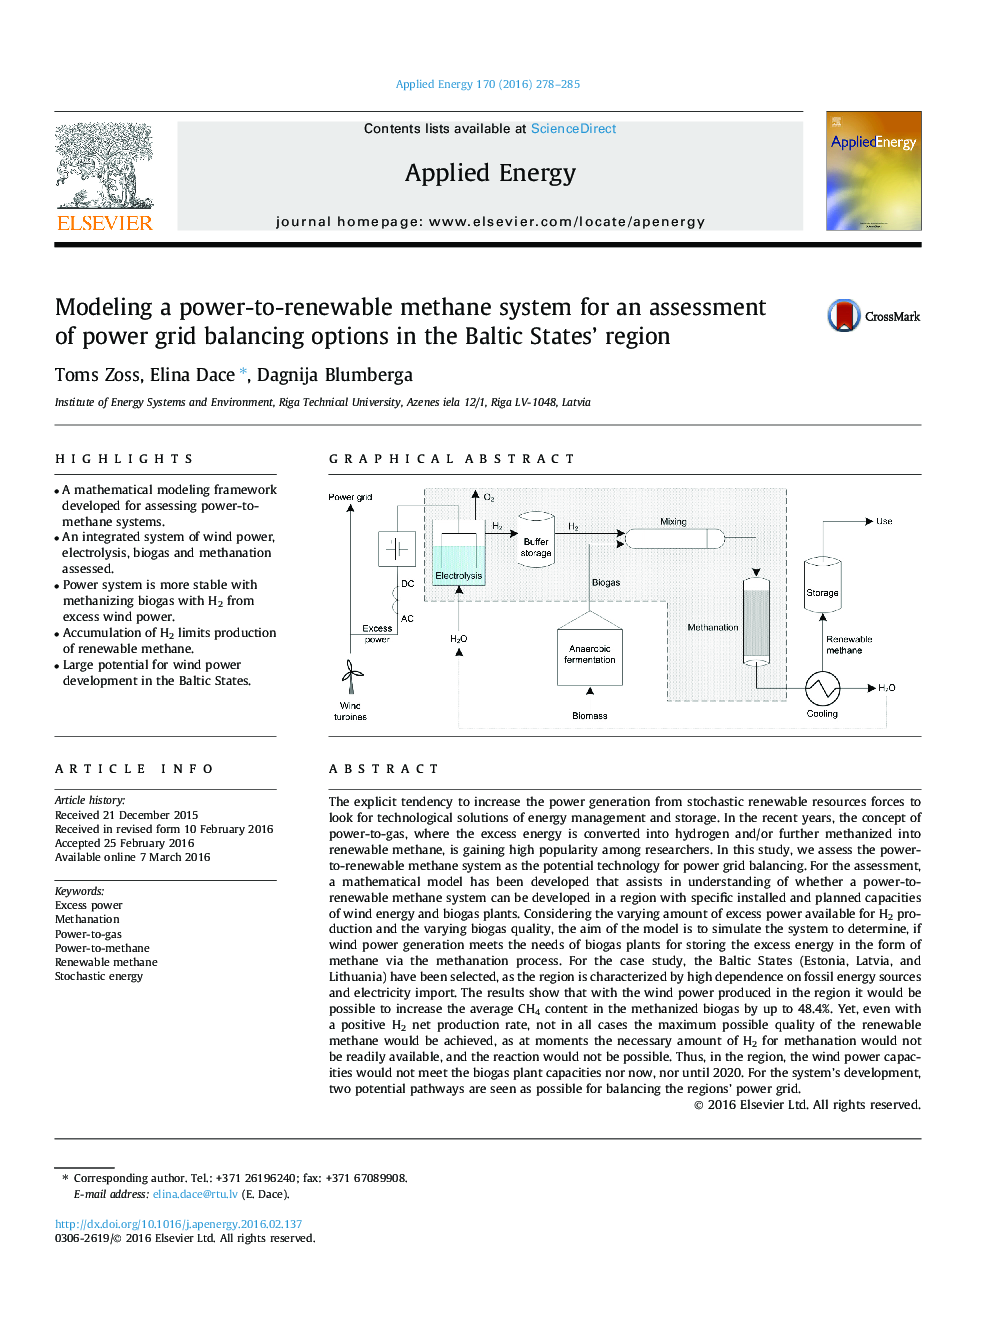 مدل سازی یک سیستم متان قدرت به تجدید پذیر برای ارزیابی گزینه های متعادل کننده برق در منطقه بالتیک 